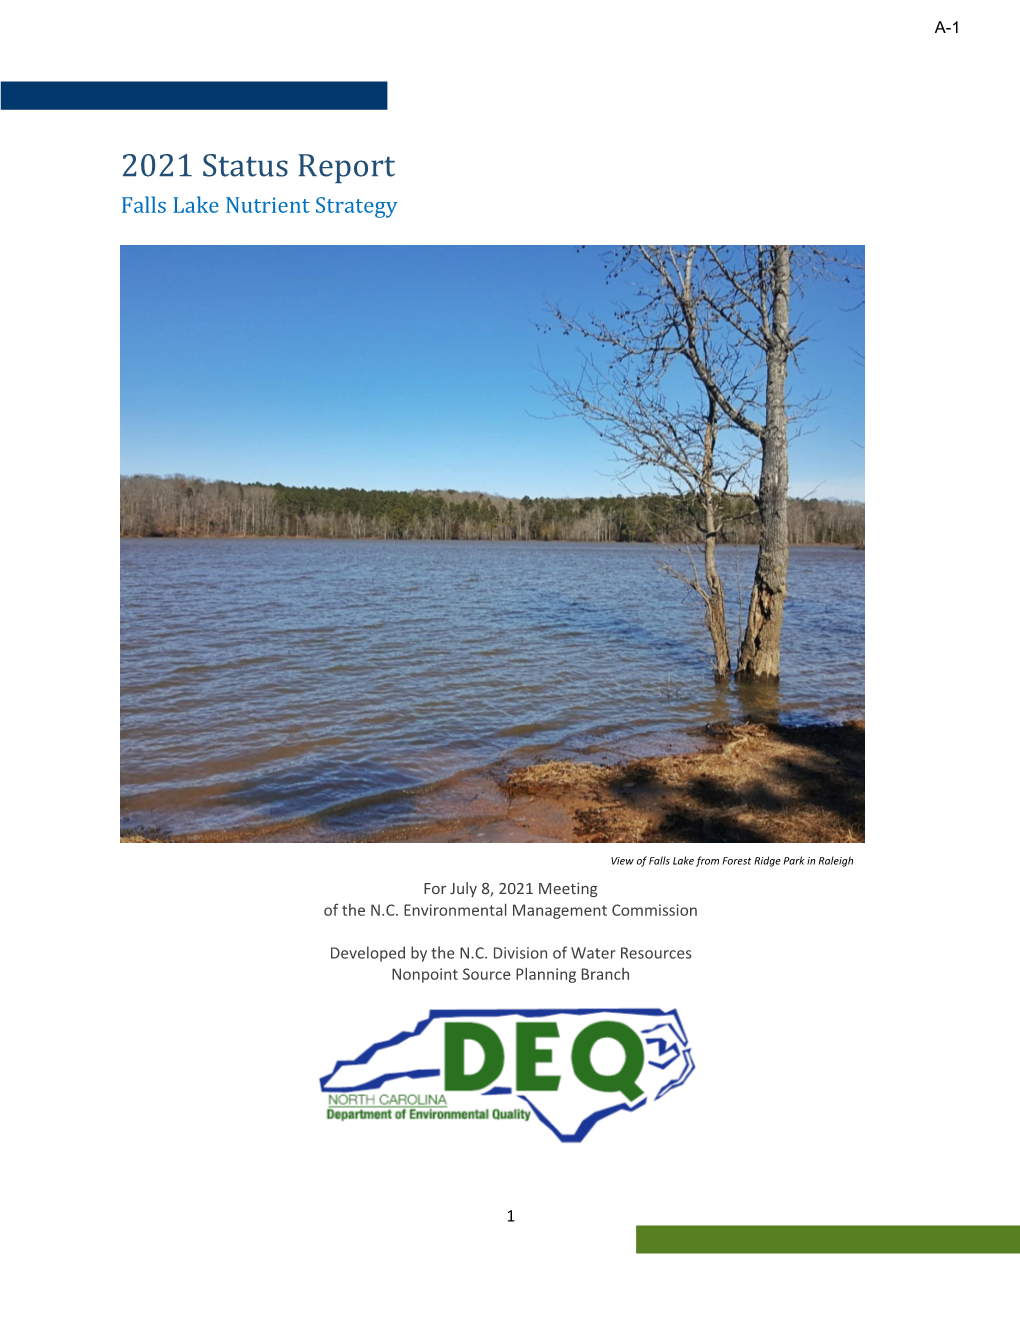 2021 Falls Lake Status Report